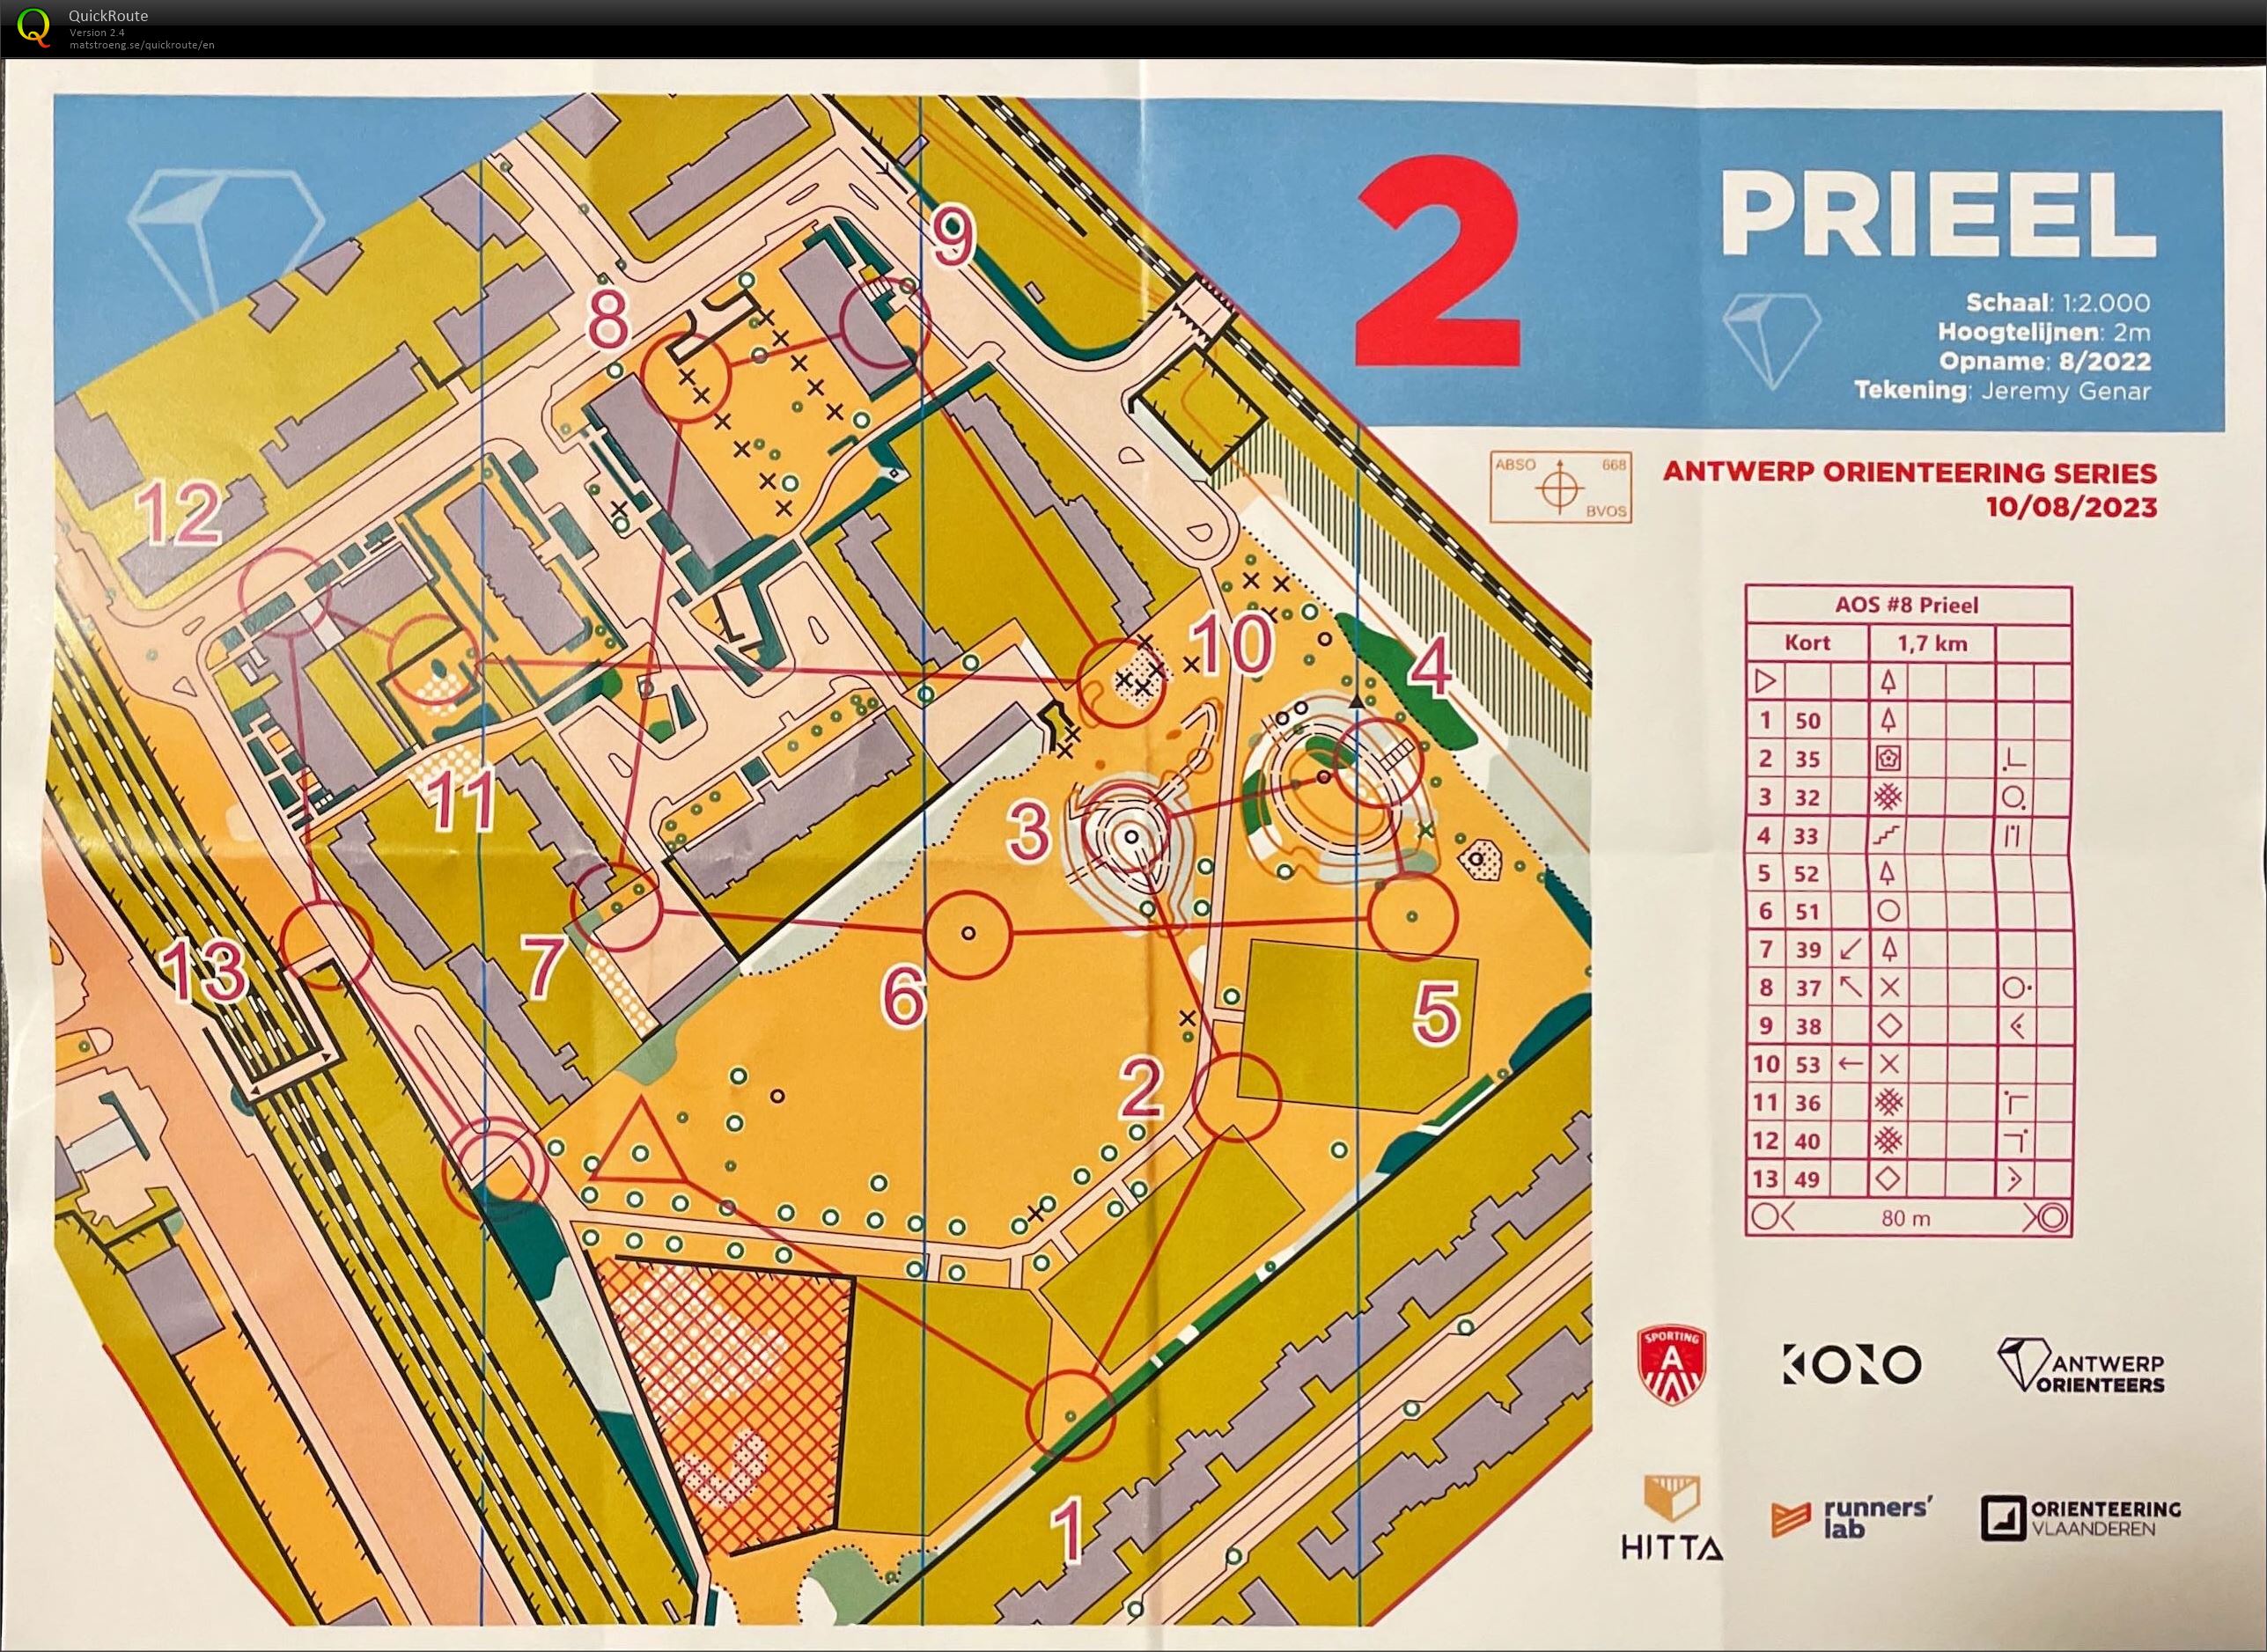 Antwerp Orienteering Series - Prieel - Kort (10-08-2023)